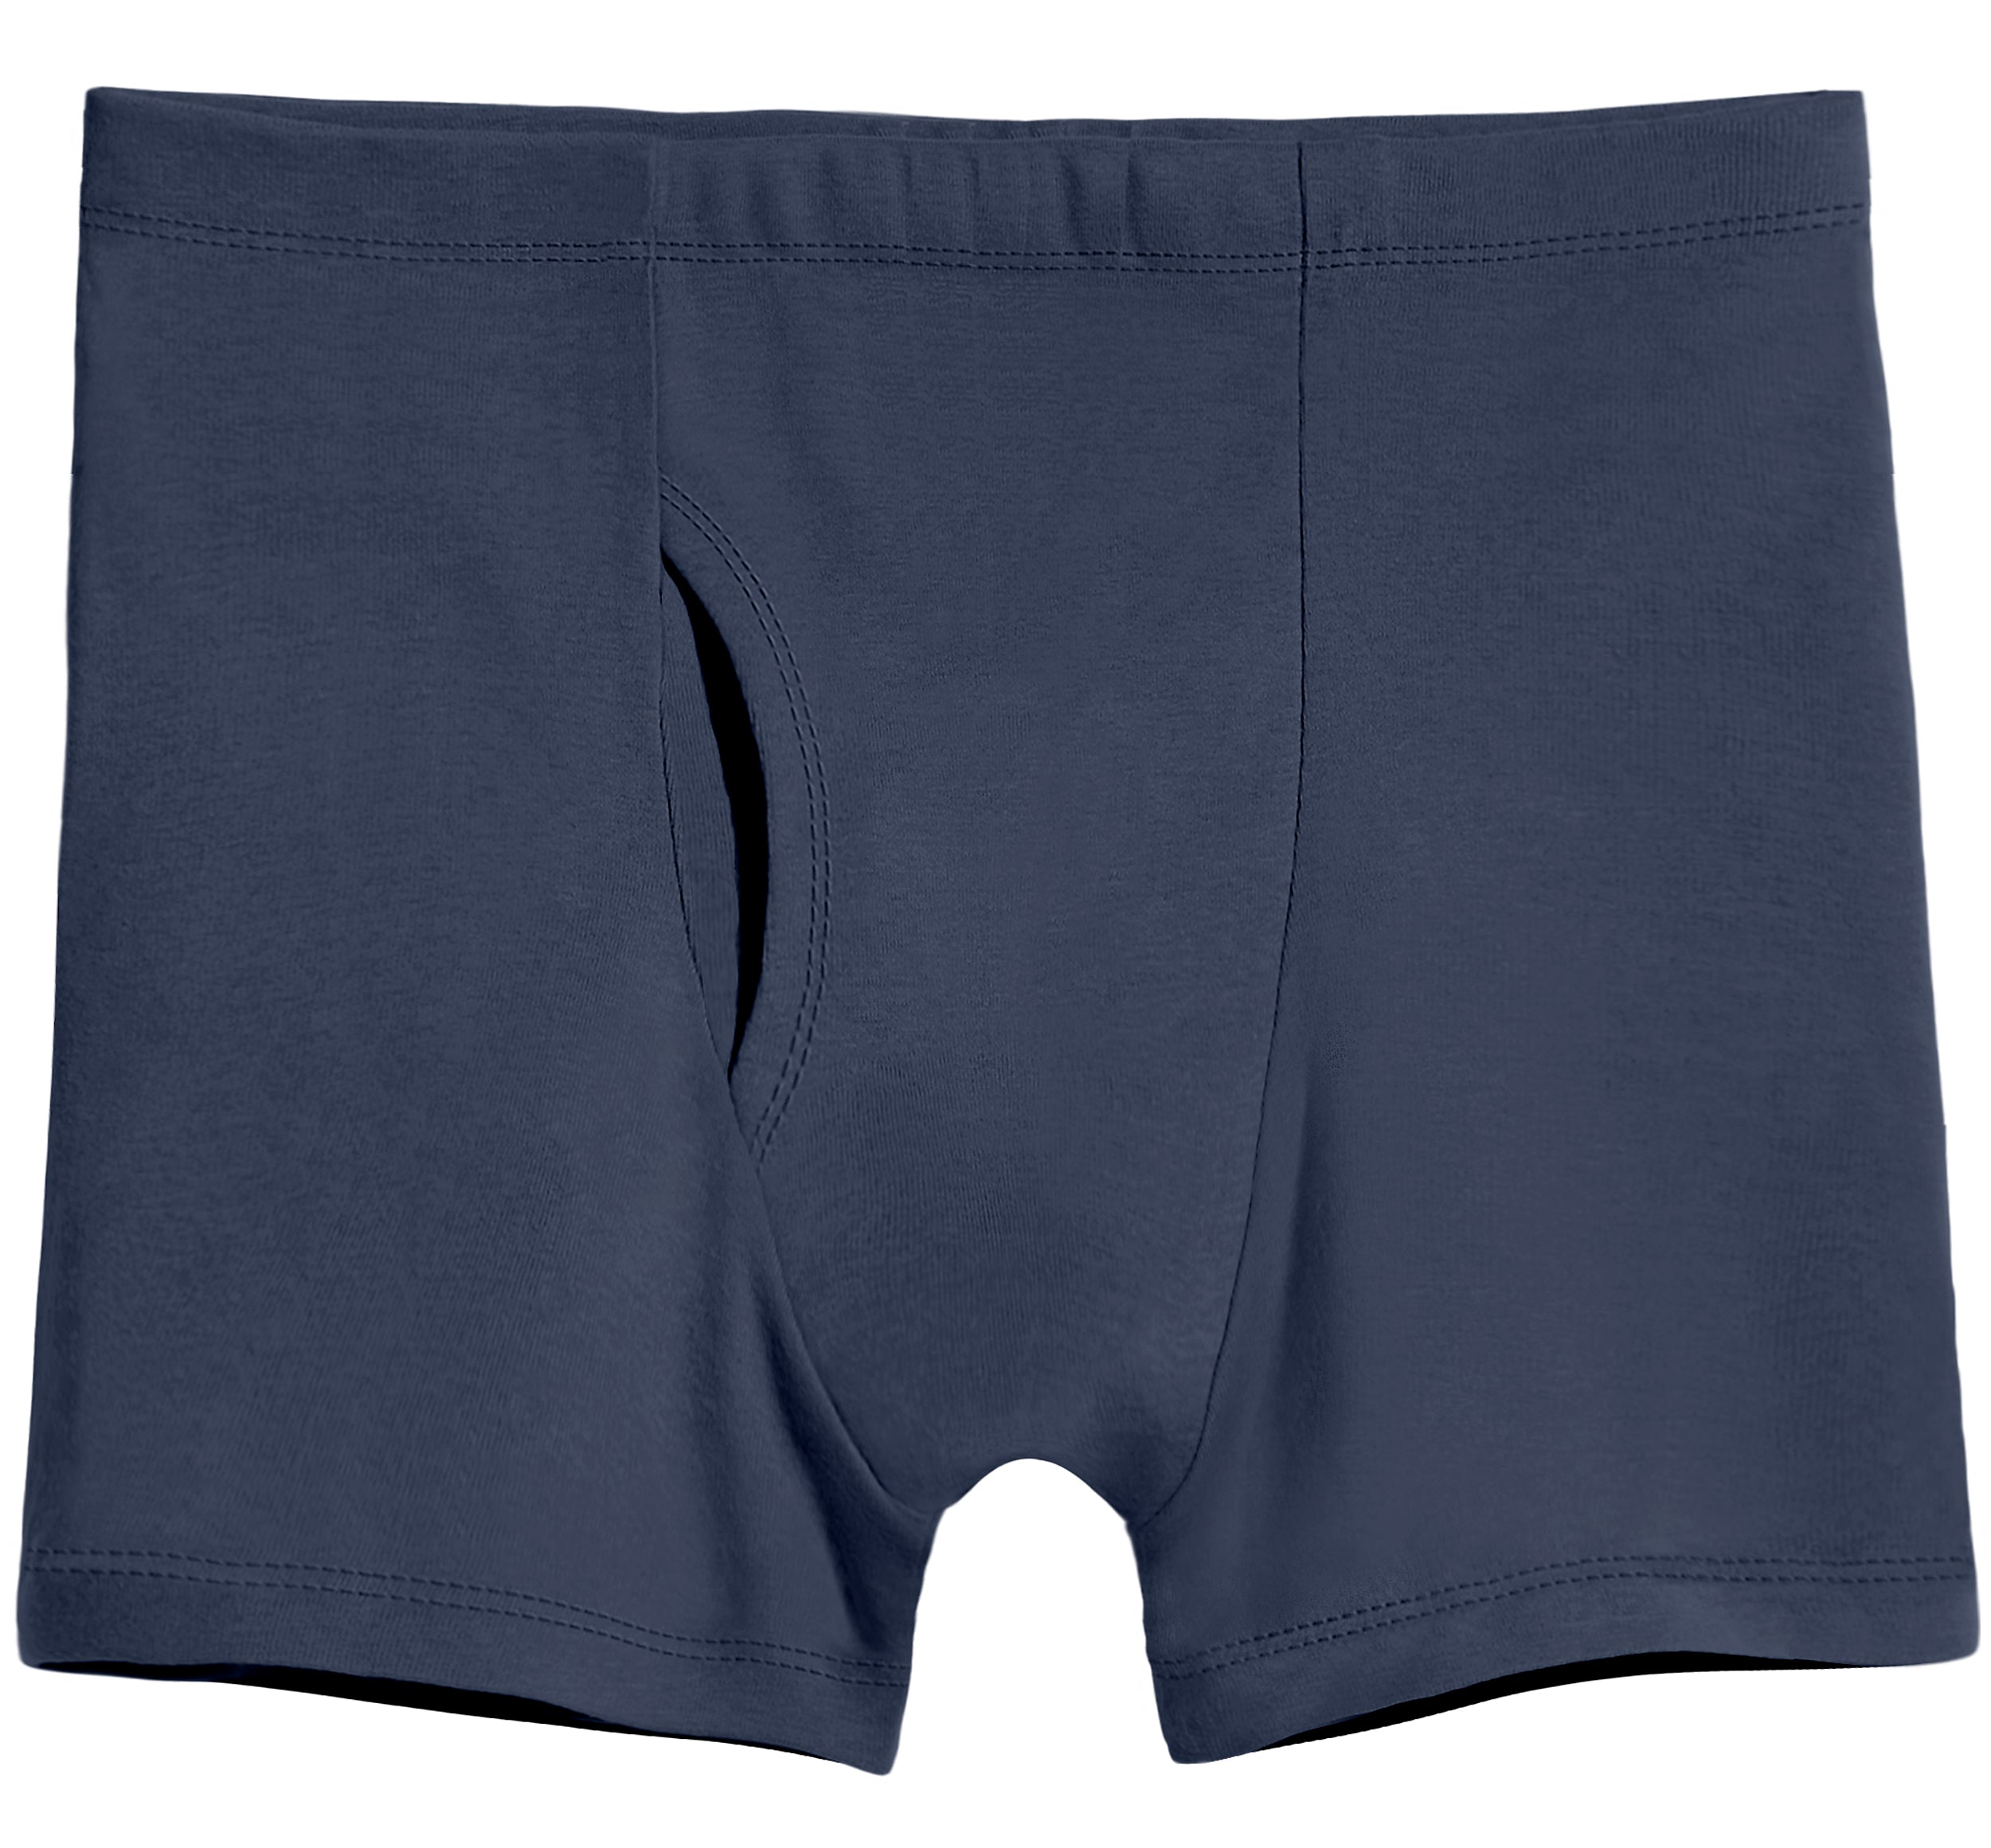 Supreme Cotton Active Shorts for Men